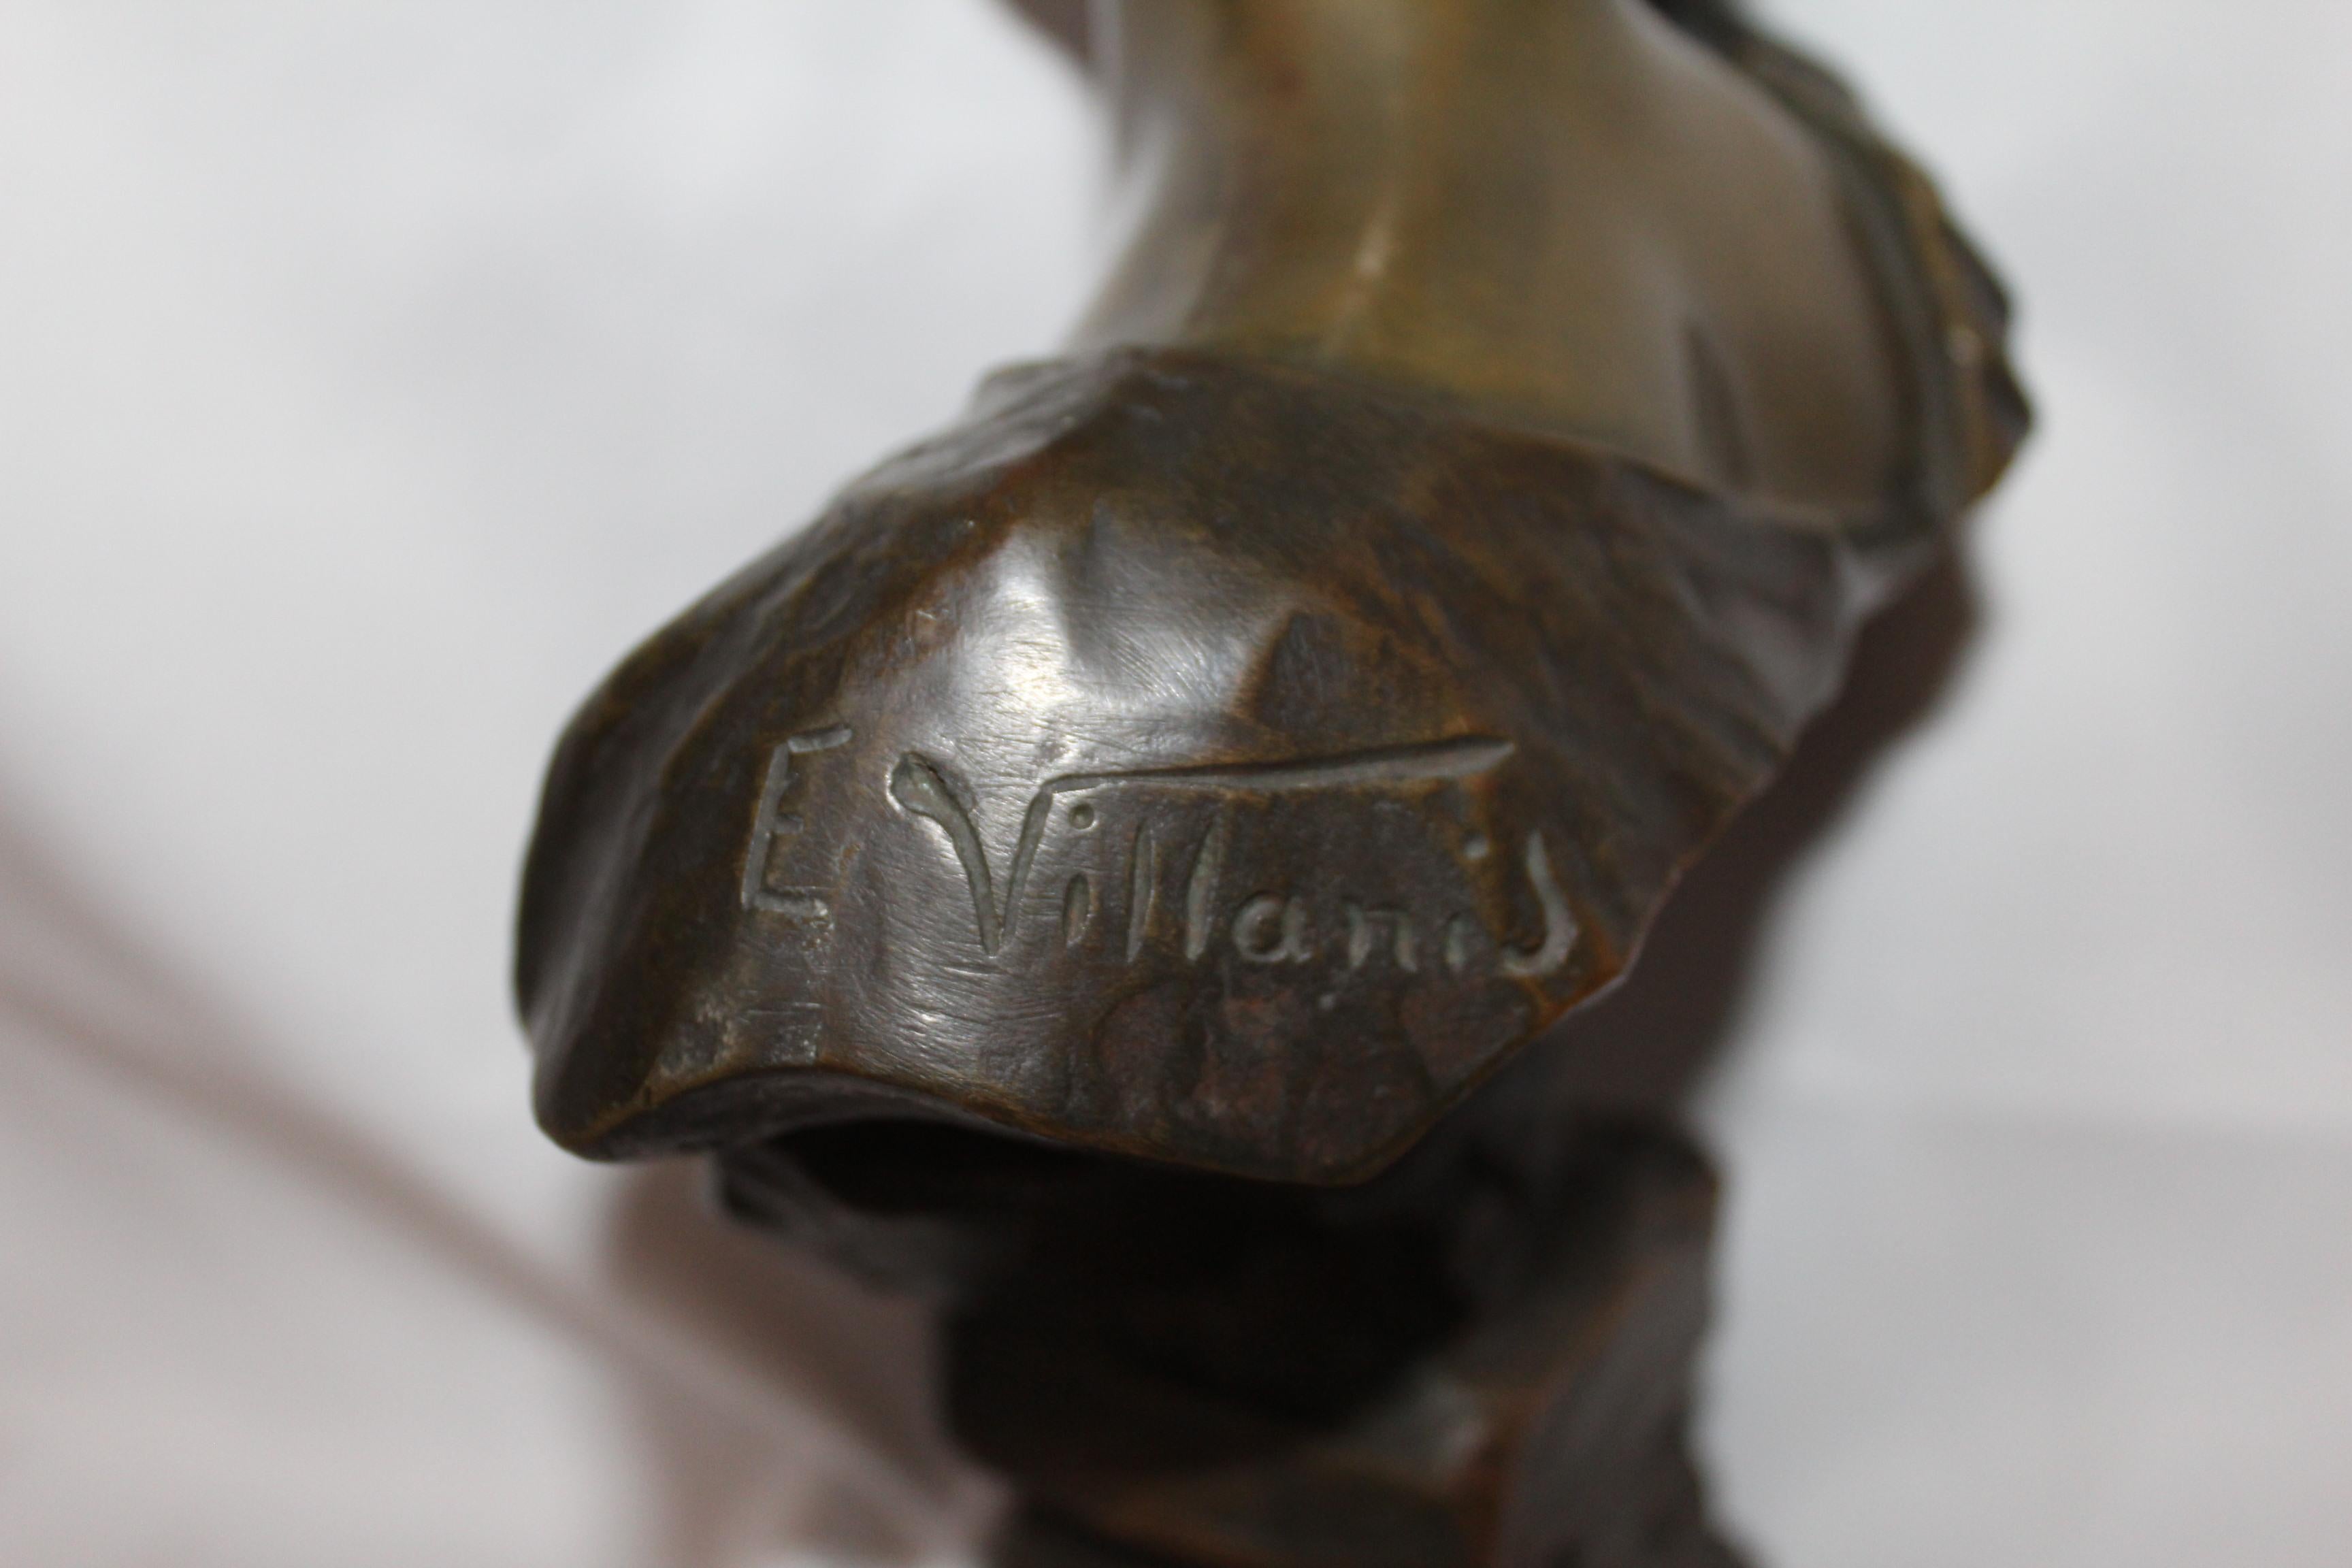 Antique Bust, Art Nouveau by Villanis Bronze Medium Size 1